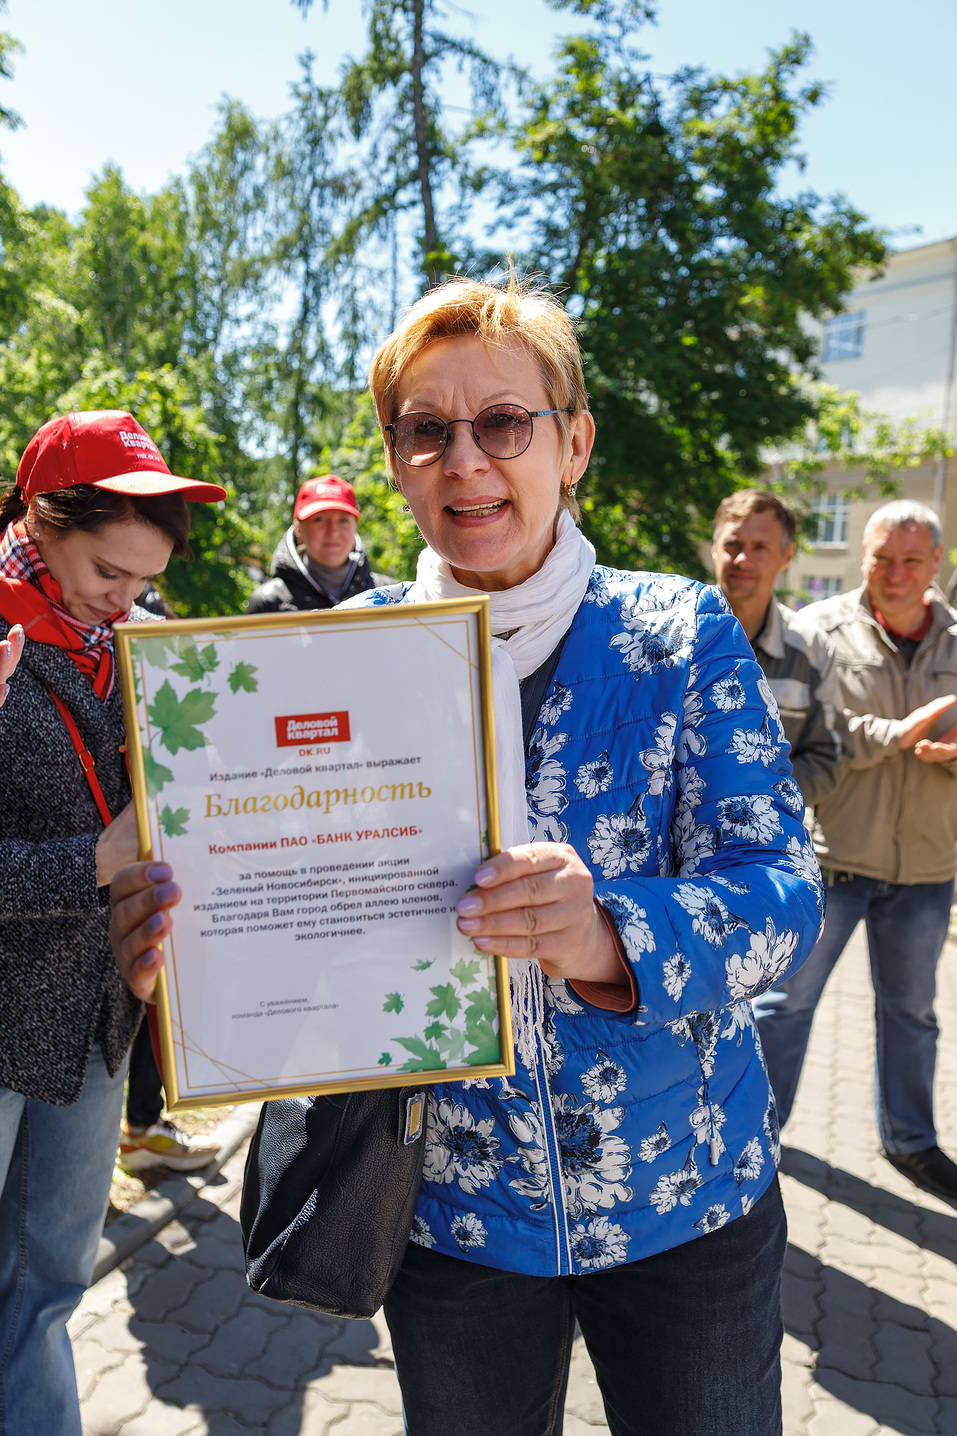 Издание «Деловой квартал» и новосибирское бизнес-сообщество подарили городу зеленую аллею 80